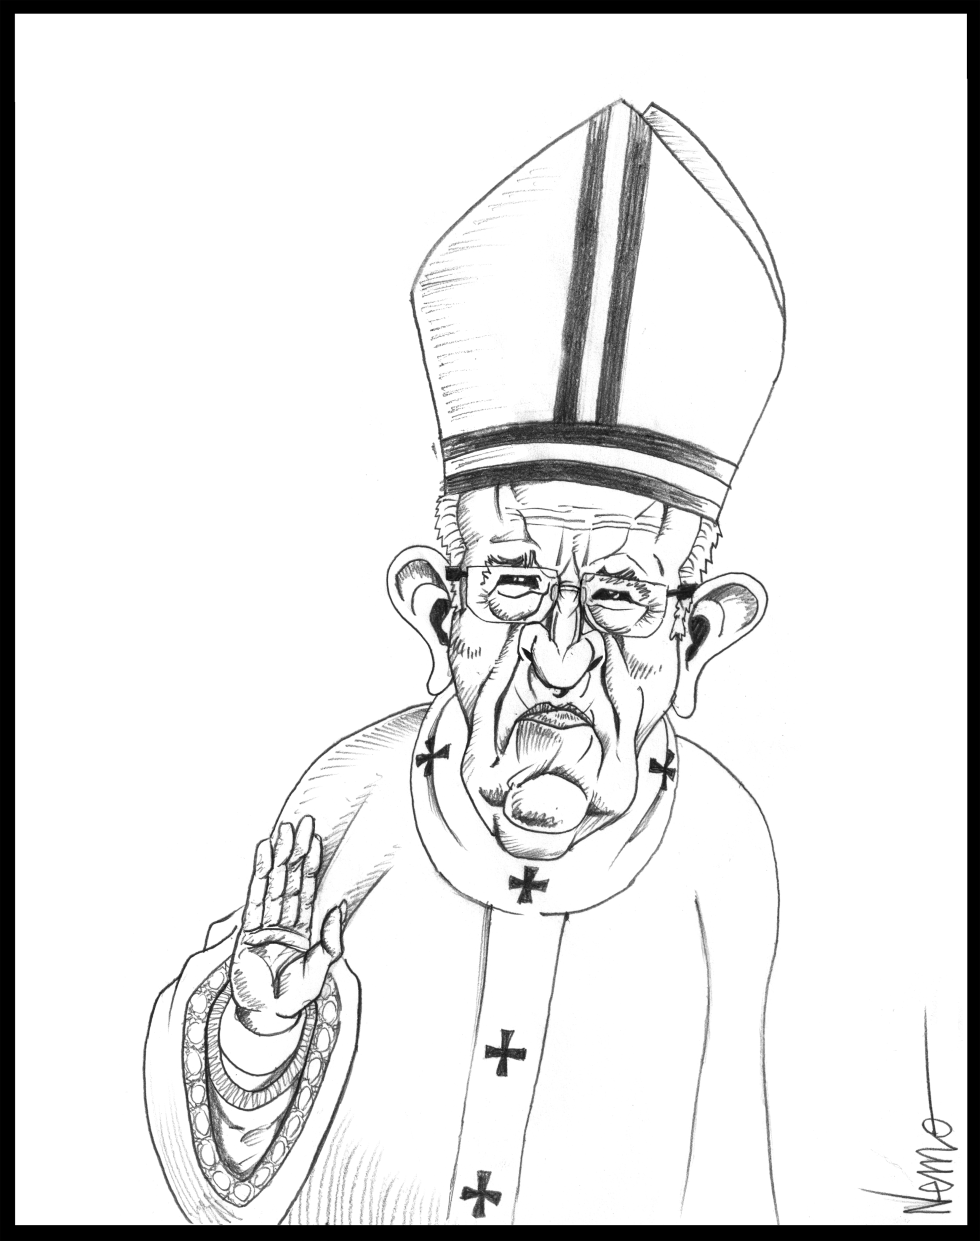 GRUMPY POPE FRANCIS by NEMØ